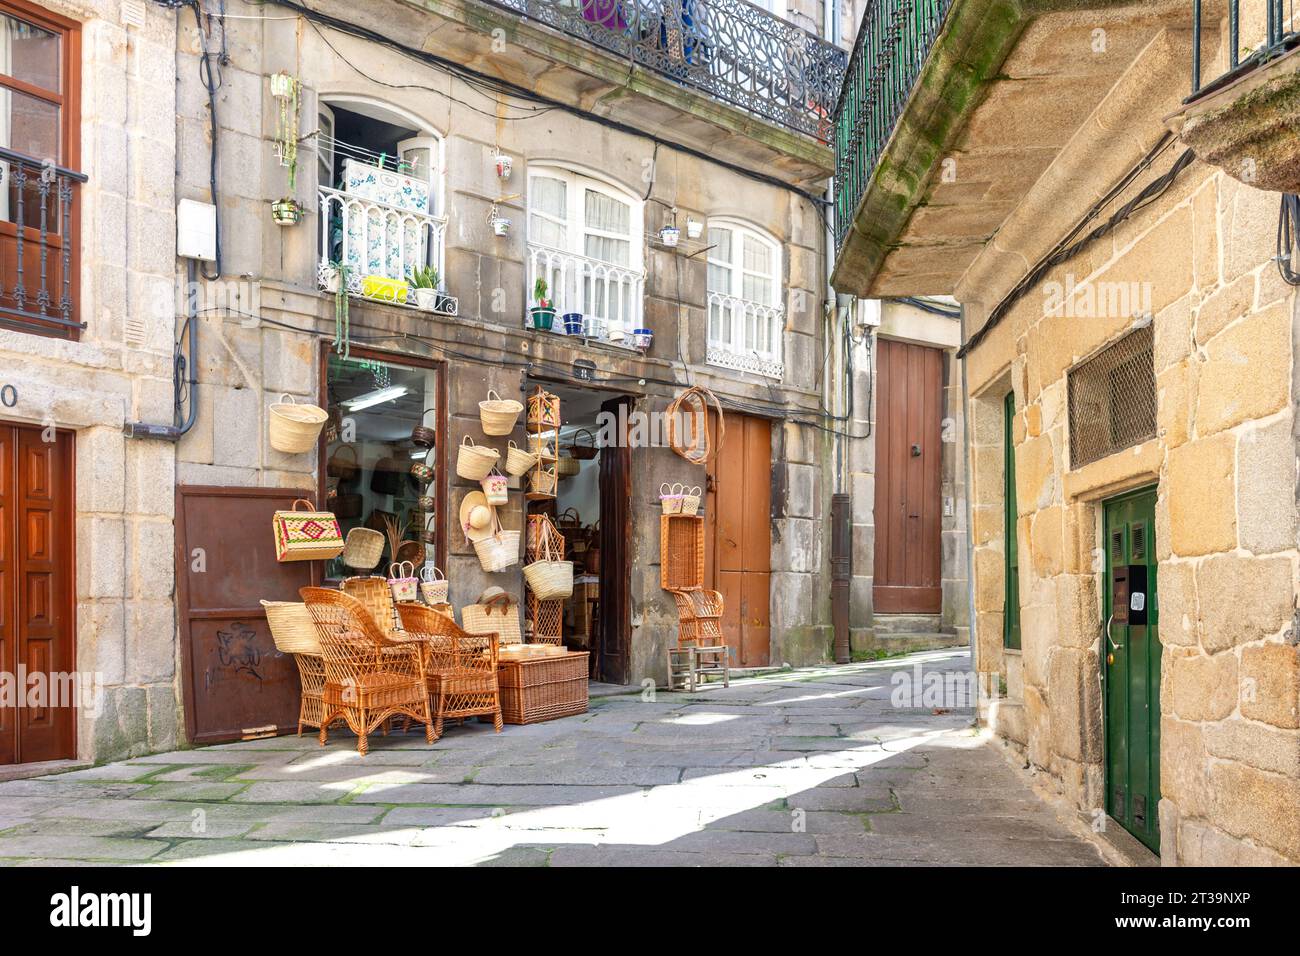 Boutique d'artisanat en osier dans la vieille ville, Vigo, province de Pontevedra, Galice, Royaume d'Espagne Banque D'Images